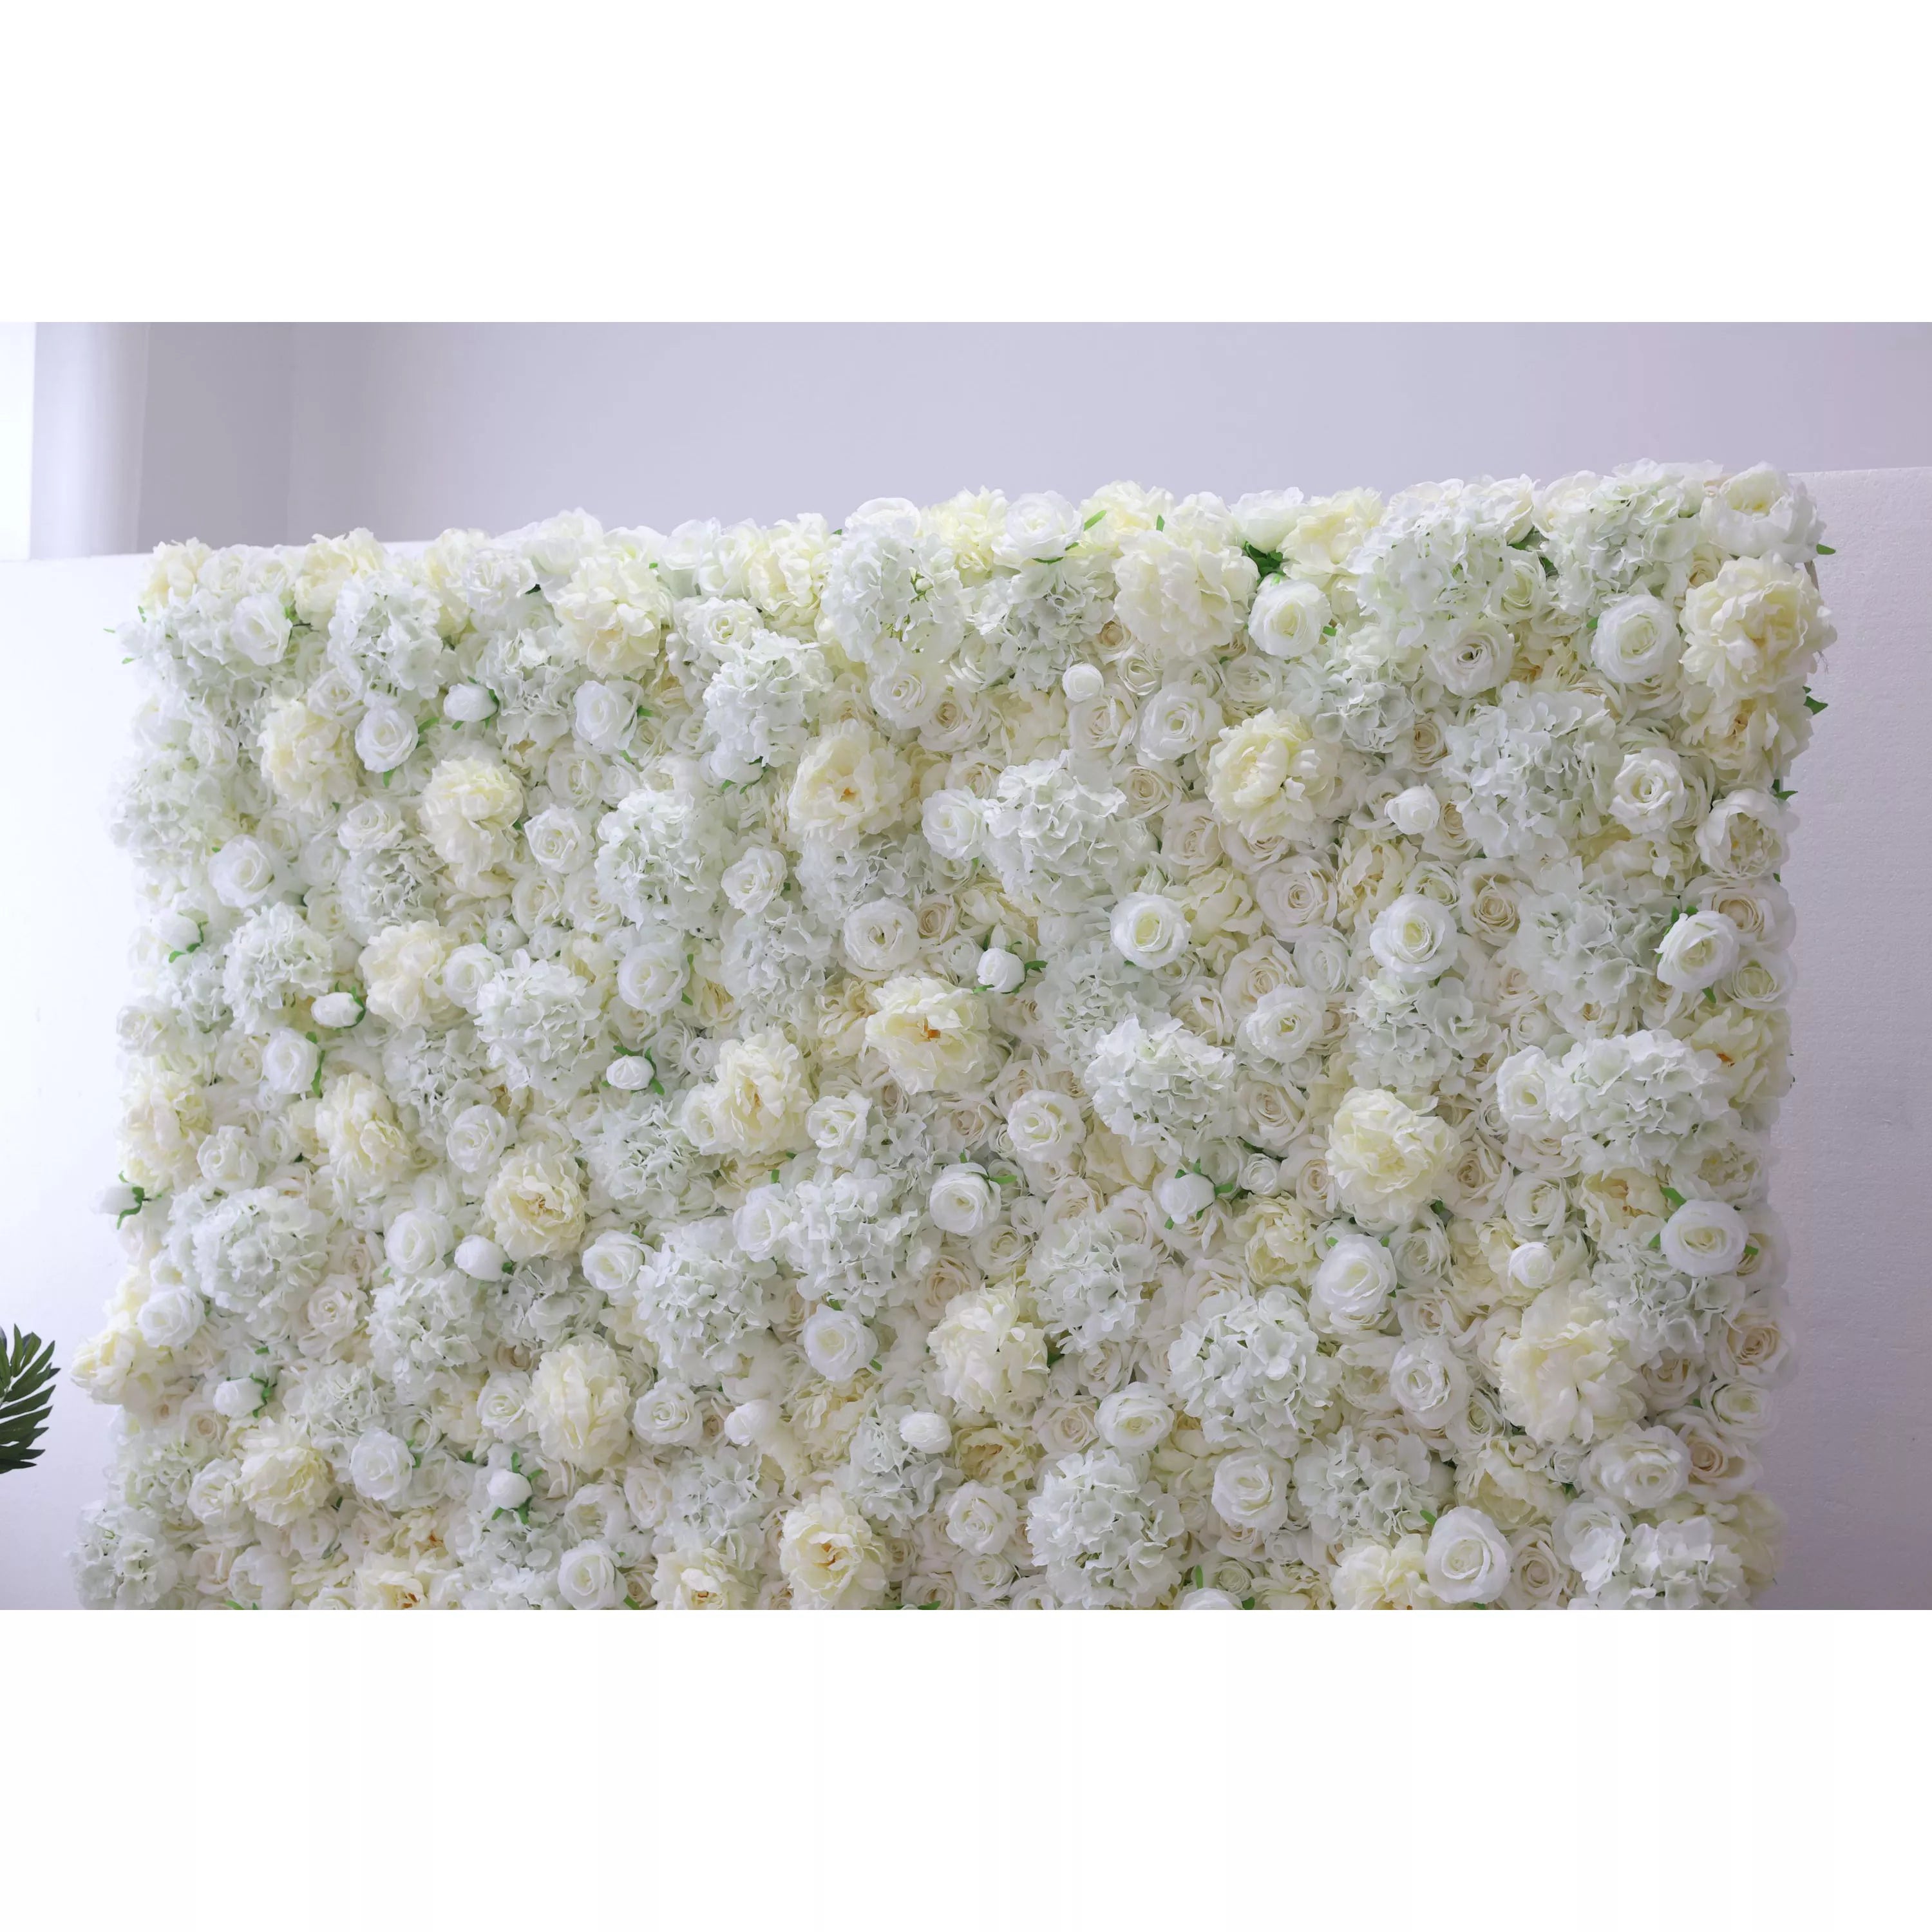 Valar – mur de fleurs blanches artificielles en tissu enroulé, toile de fond pour mariage, décor de fête florale, photographie d'événements